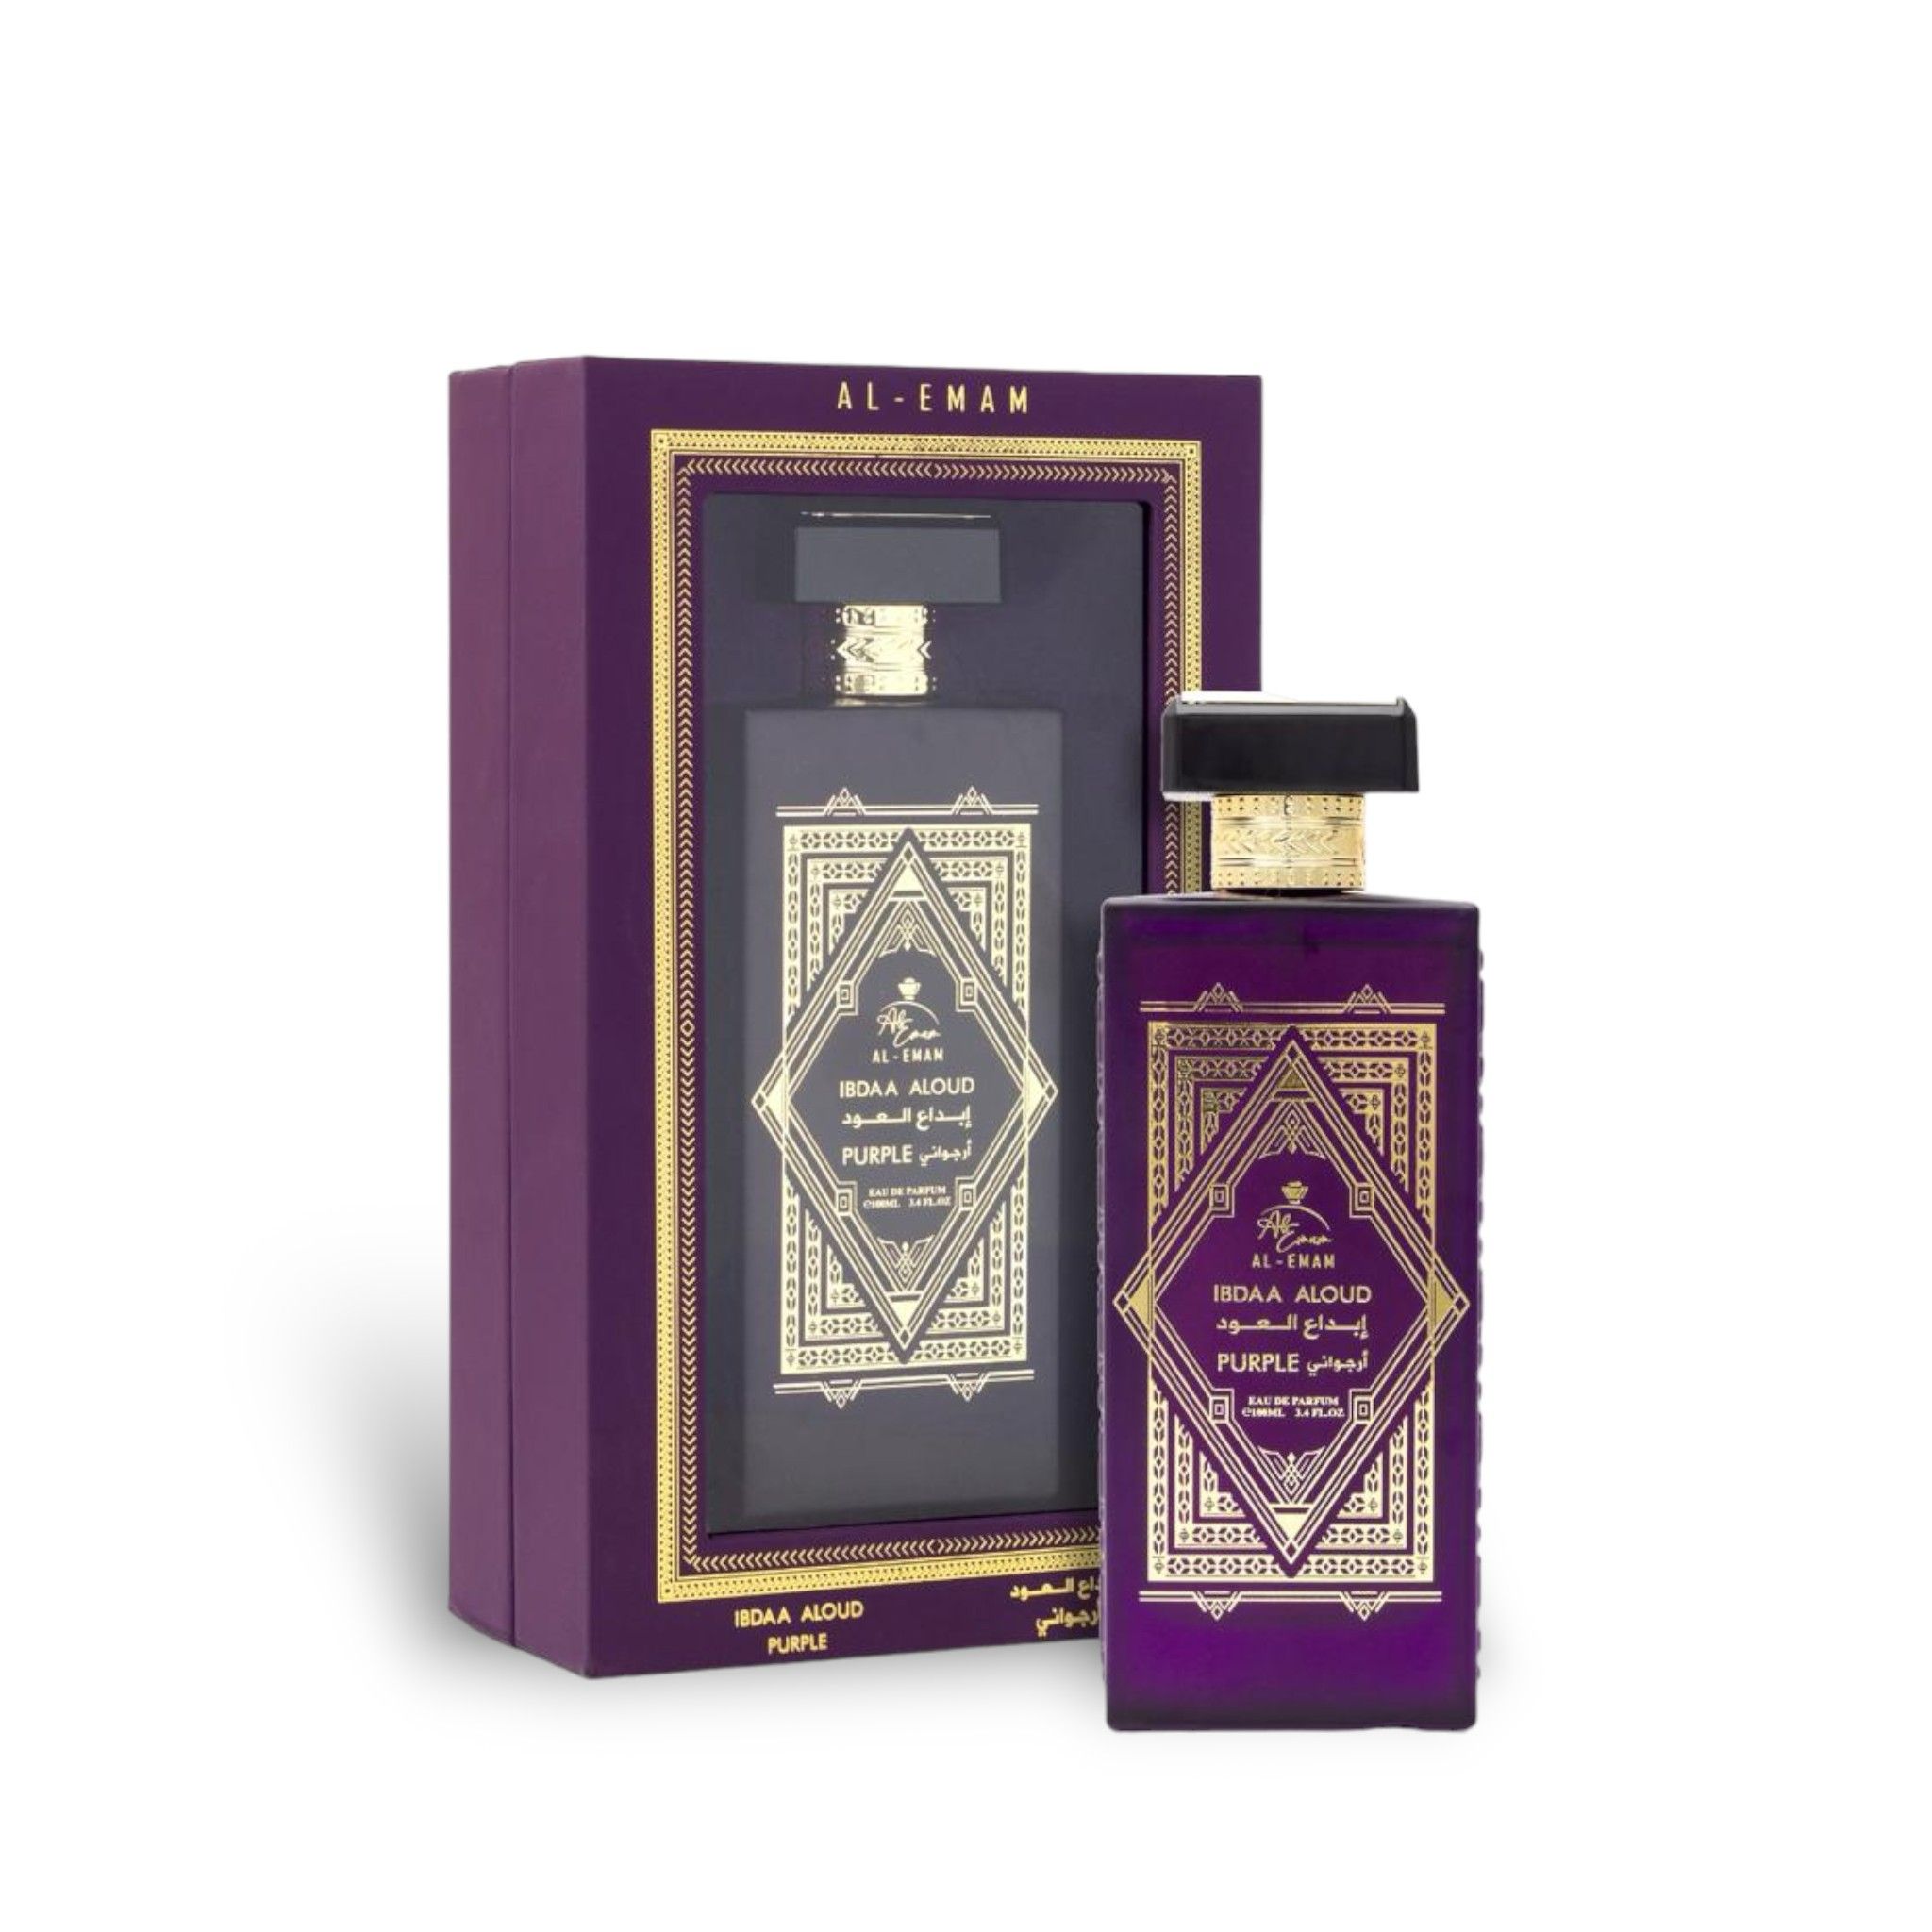 Ibdaa Aloud Purple Perfume Eau De Parfum 100Ml By Al-Emam